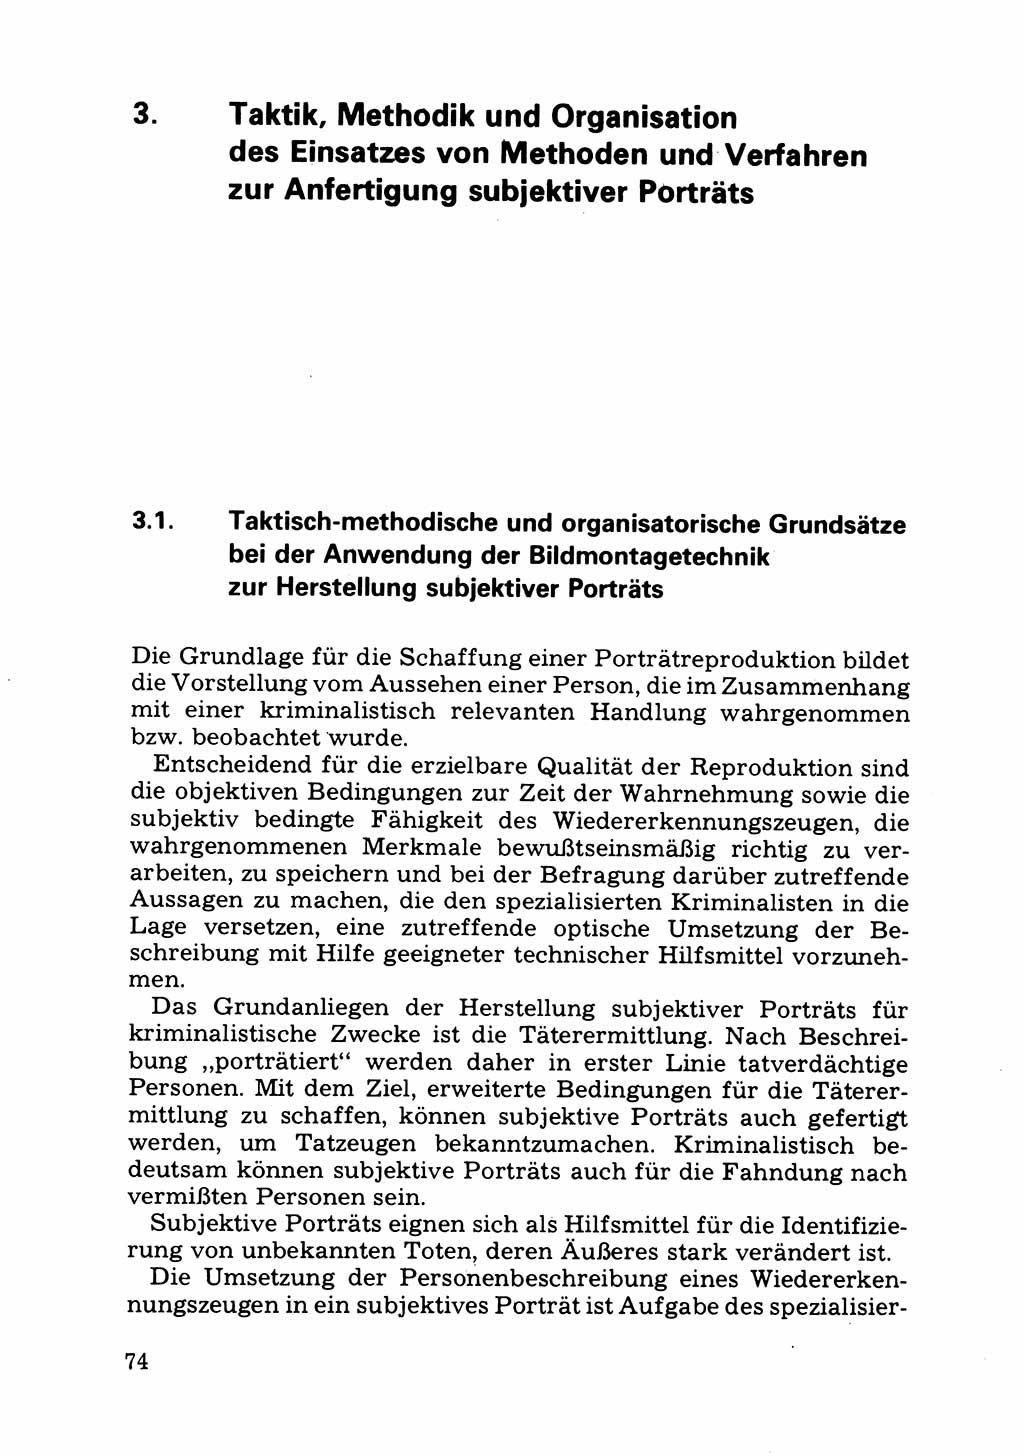 Das subjektive Porträt [Deutsche Demokratische Republik (DDR)] 1981, Seite 74 (Subj. Port. DDR 1981, S. 74)